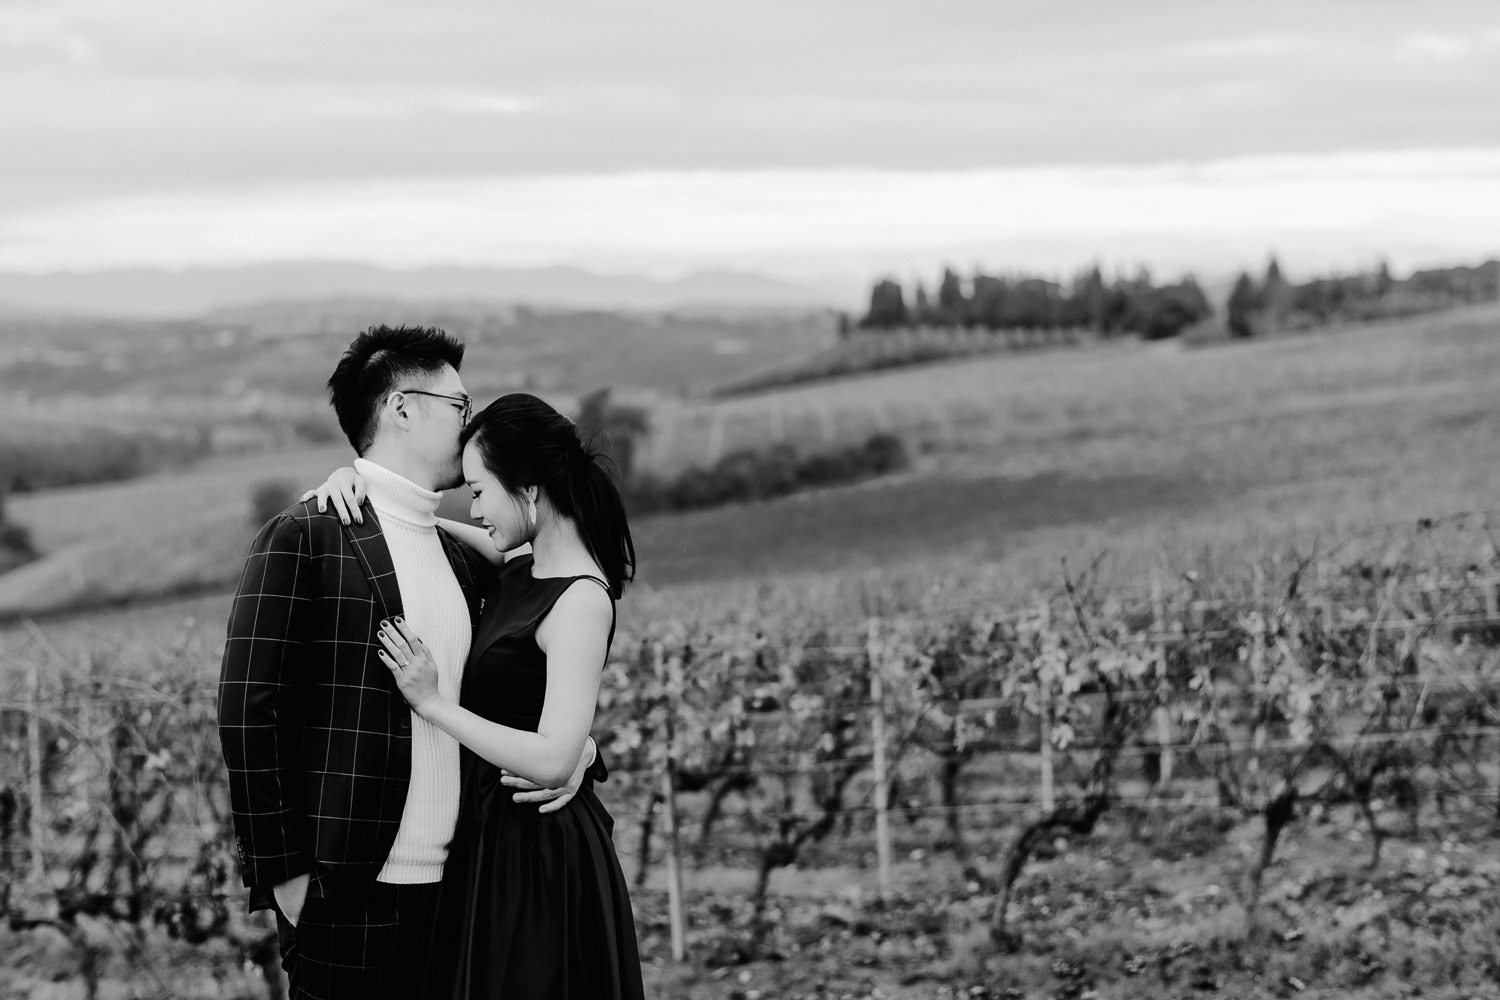 winter wedding proposal tuscany chianti vineyard couple portraits